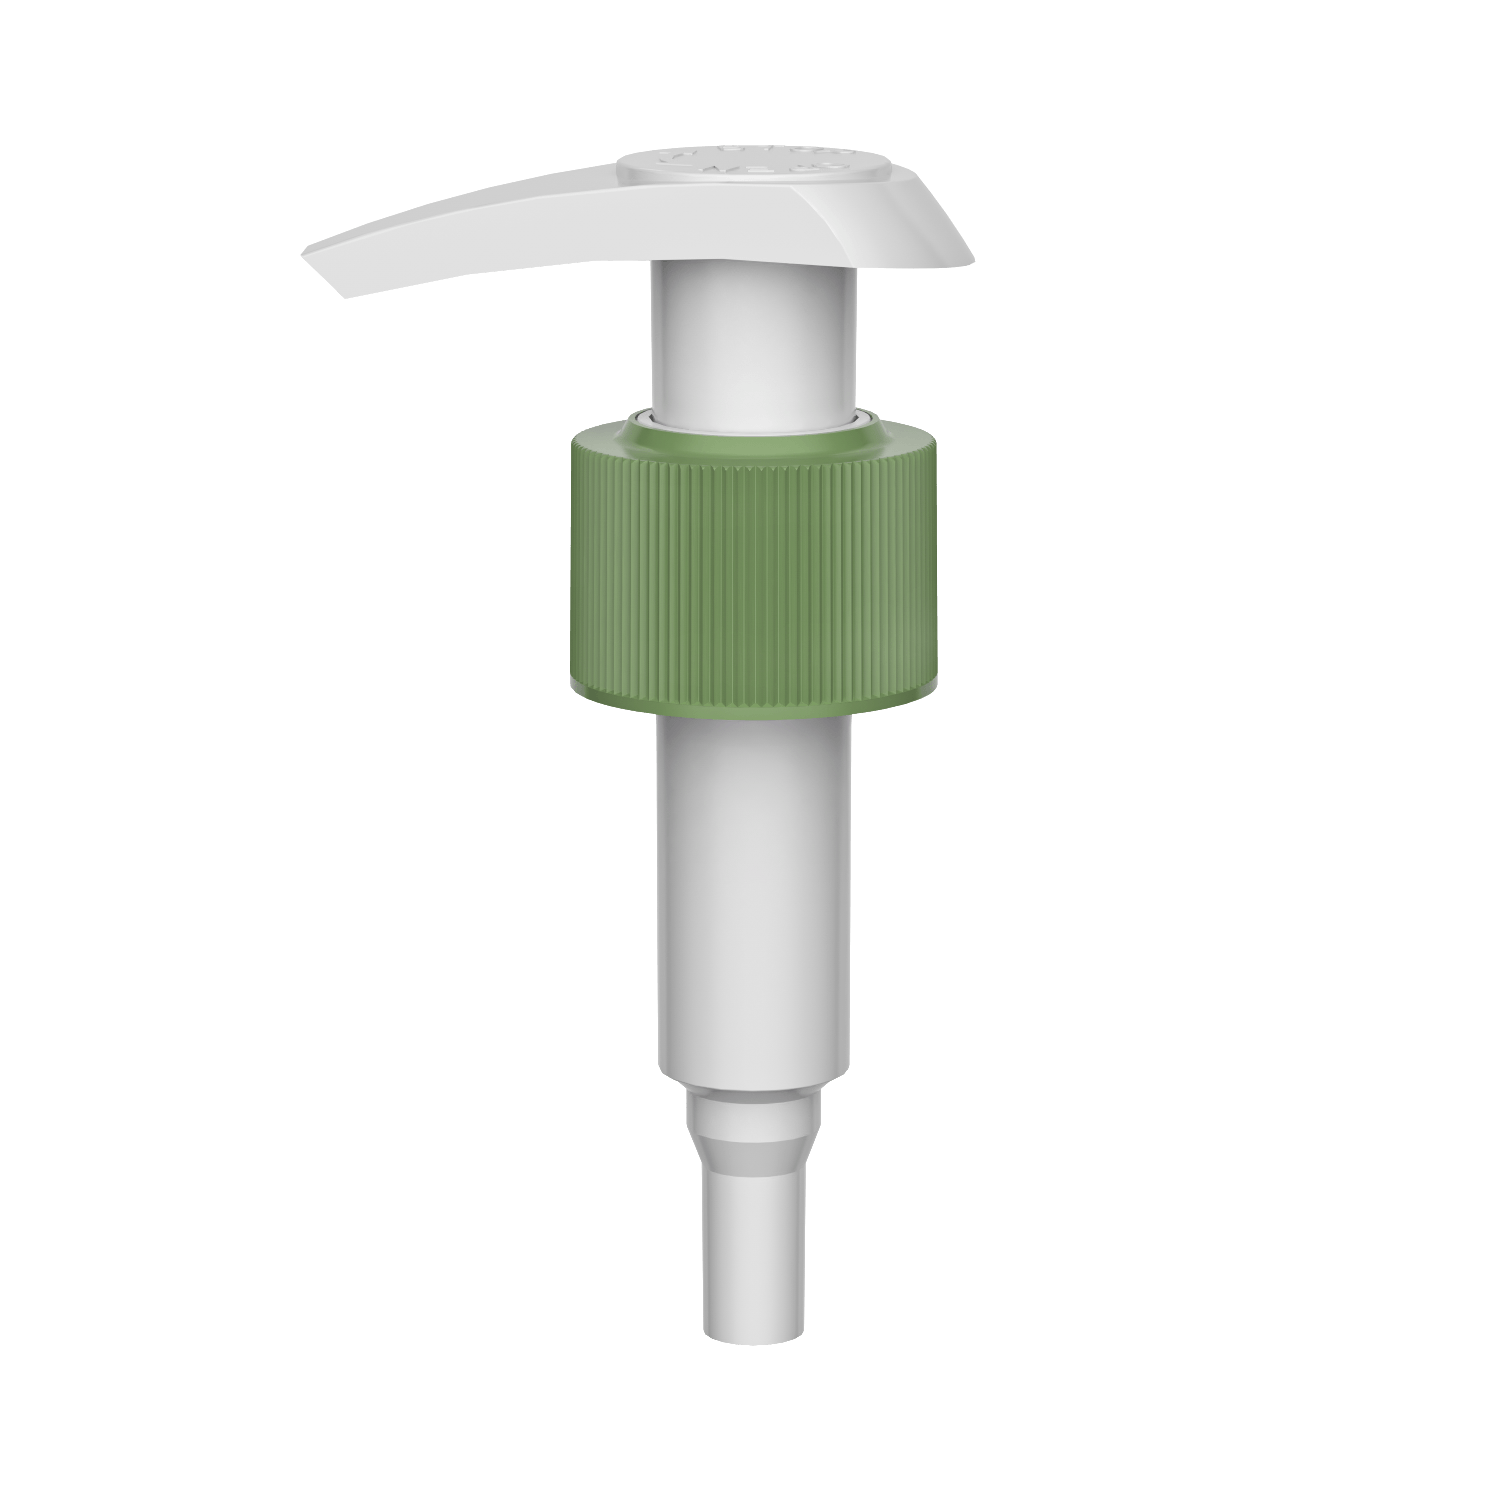 HD-607B 24/410 links rechts Verriegelung Shampoo Reinigungsspender 1.2-1.5CC Lotion Pumpe